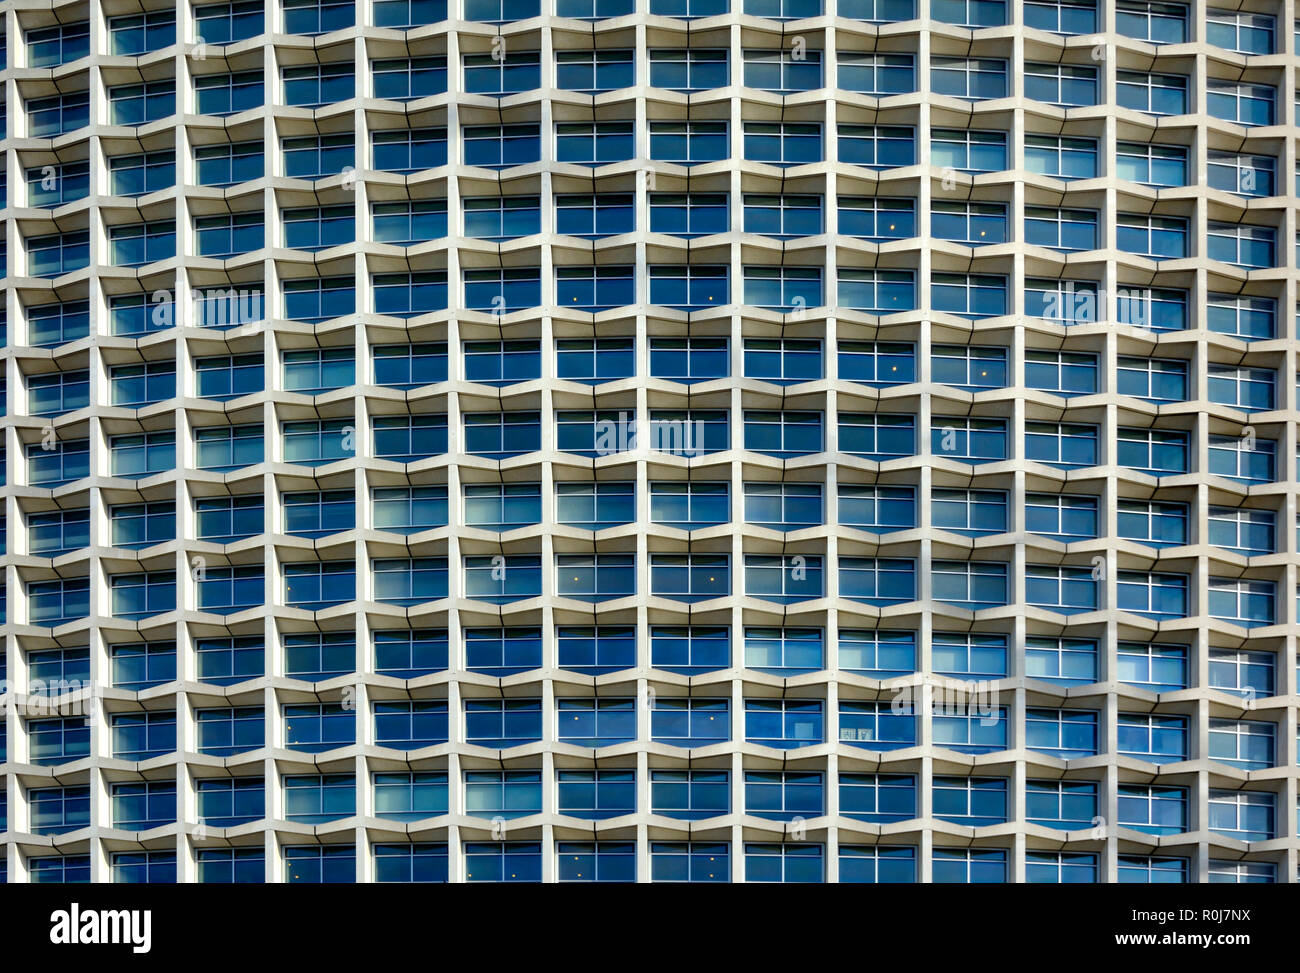 Centre Point immeuble, Londres, Angleterre, Royaume-Uni. Tour de 33 étages dans le style brutaliste, 1966. Détail Banque D'Images